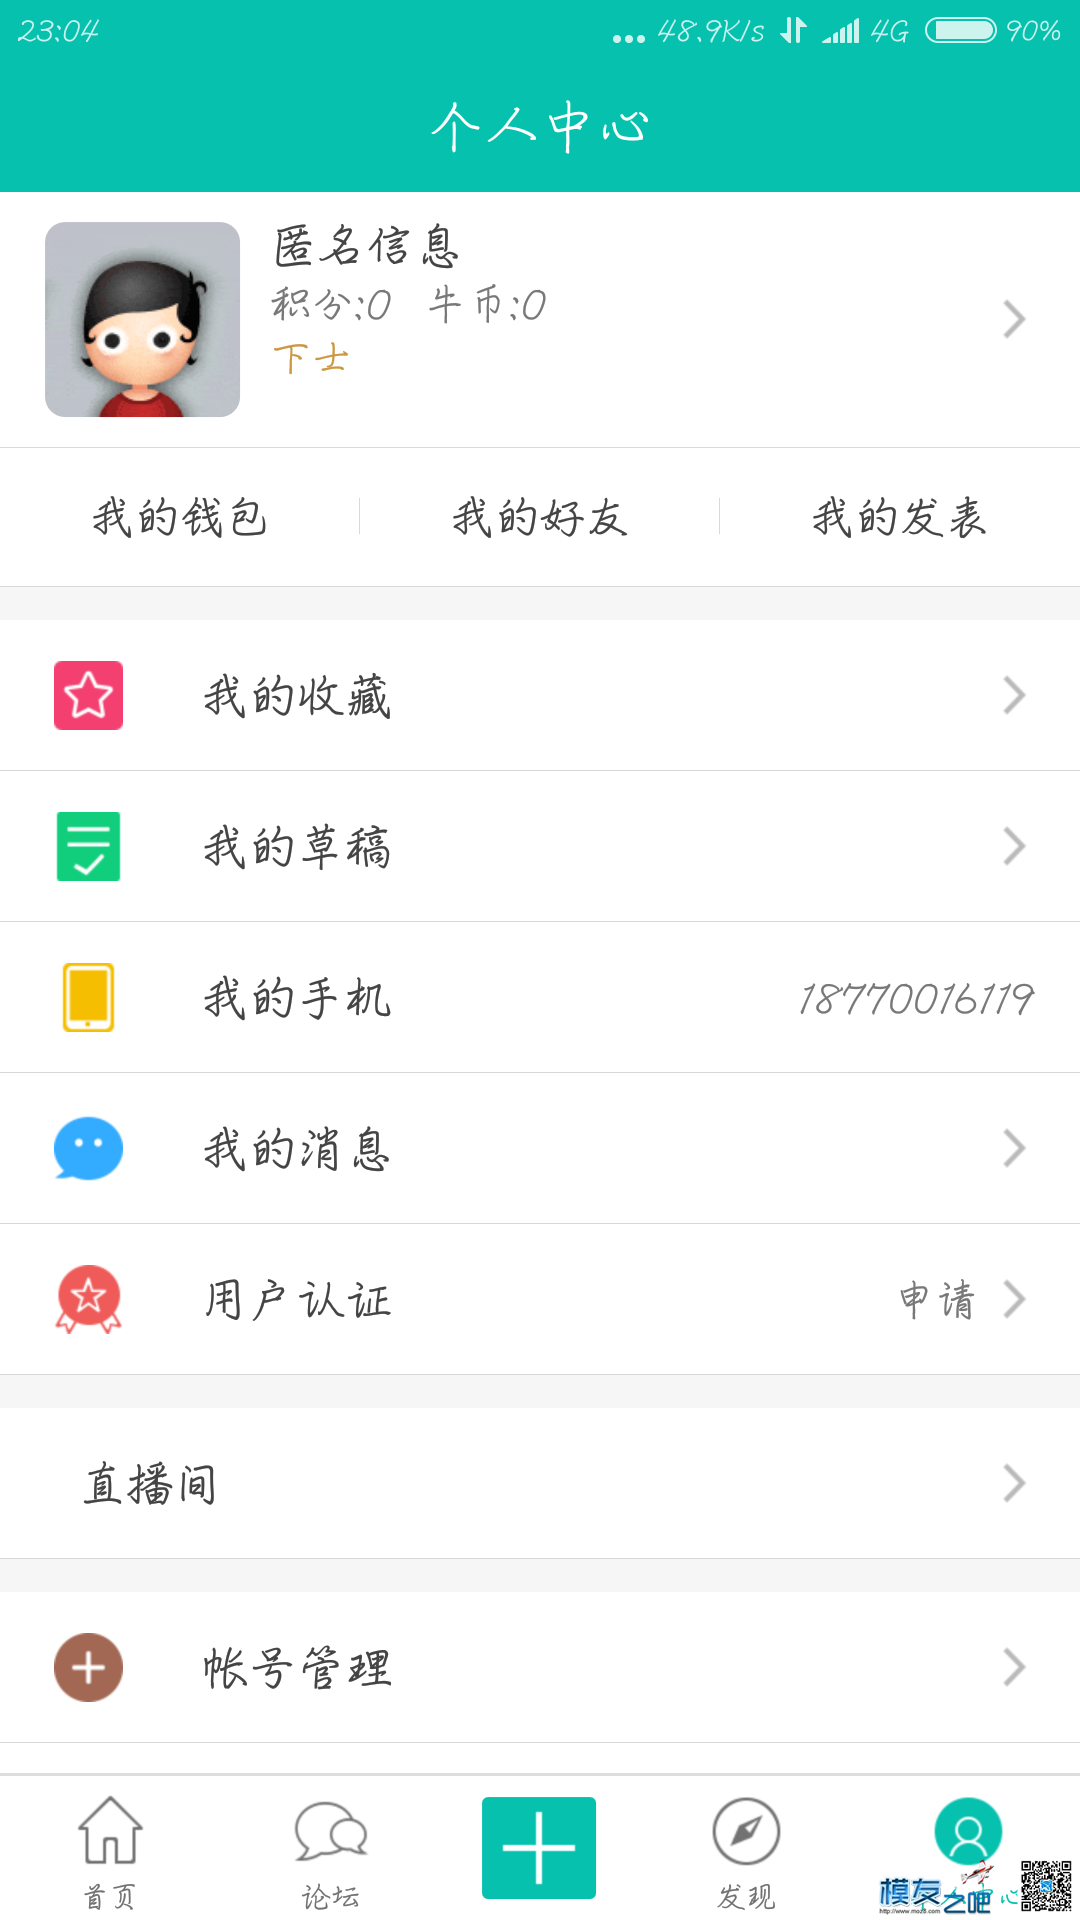 【模友之吧】100个aomway5.8G-500mw图传用于论坛推广！  作者:zhangyiyun2014 4508 